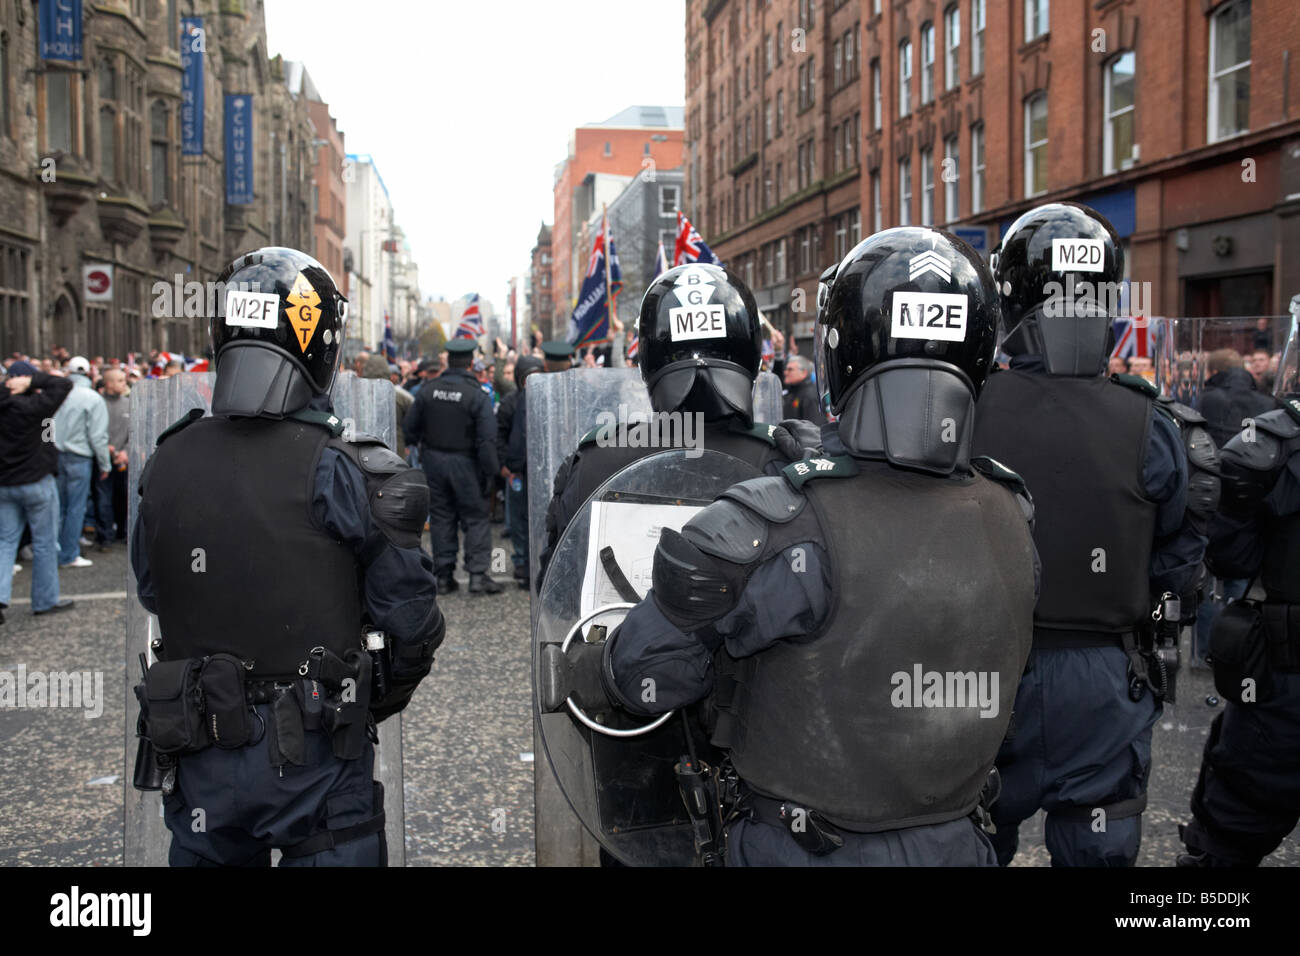 PSNI Servizio di Polizia dell'Irlanda del Nord antisommossa ufficiali di guardia permanente durante la protesta lealisti parade belfast city centre Irlanda del Nord Foto Stock